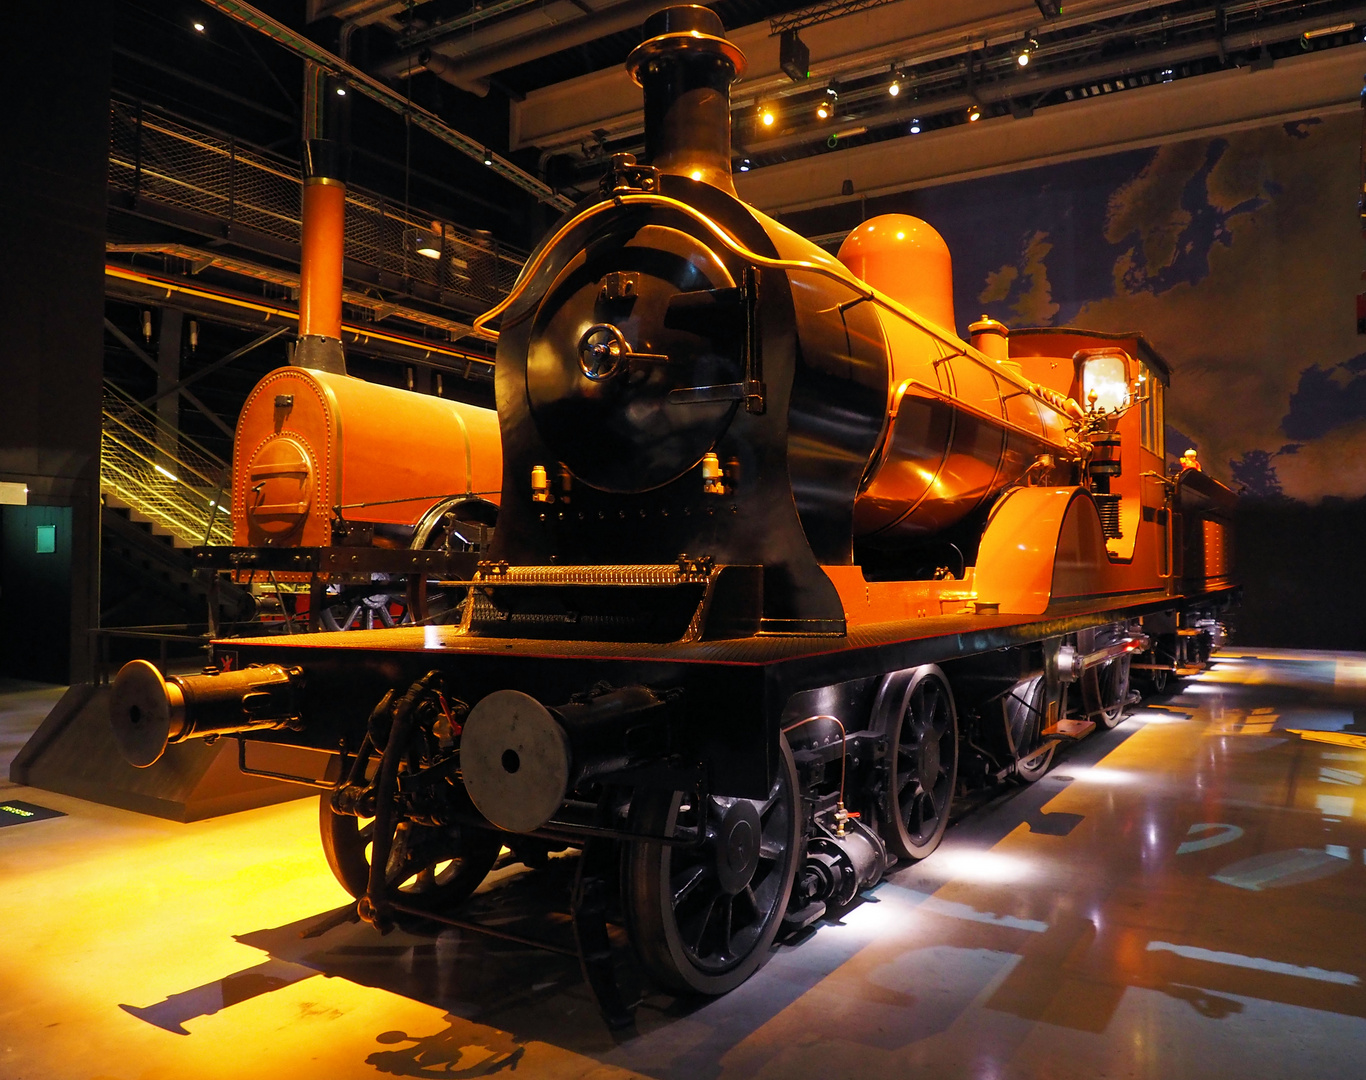 Die schönen Dampflokomotiven bei Trainworld ...